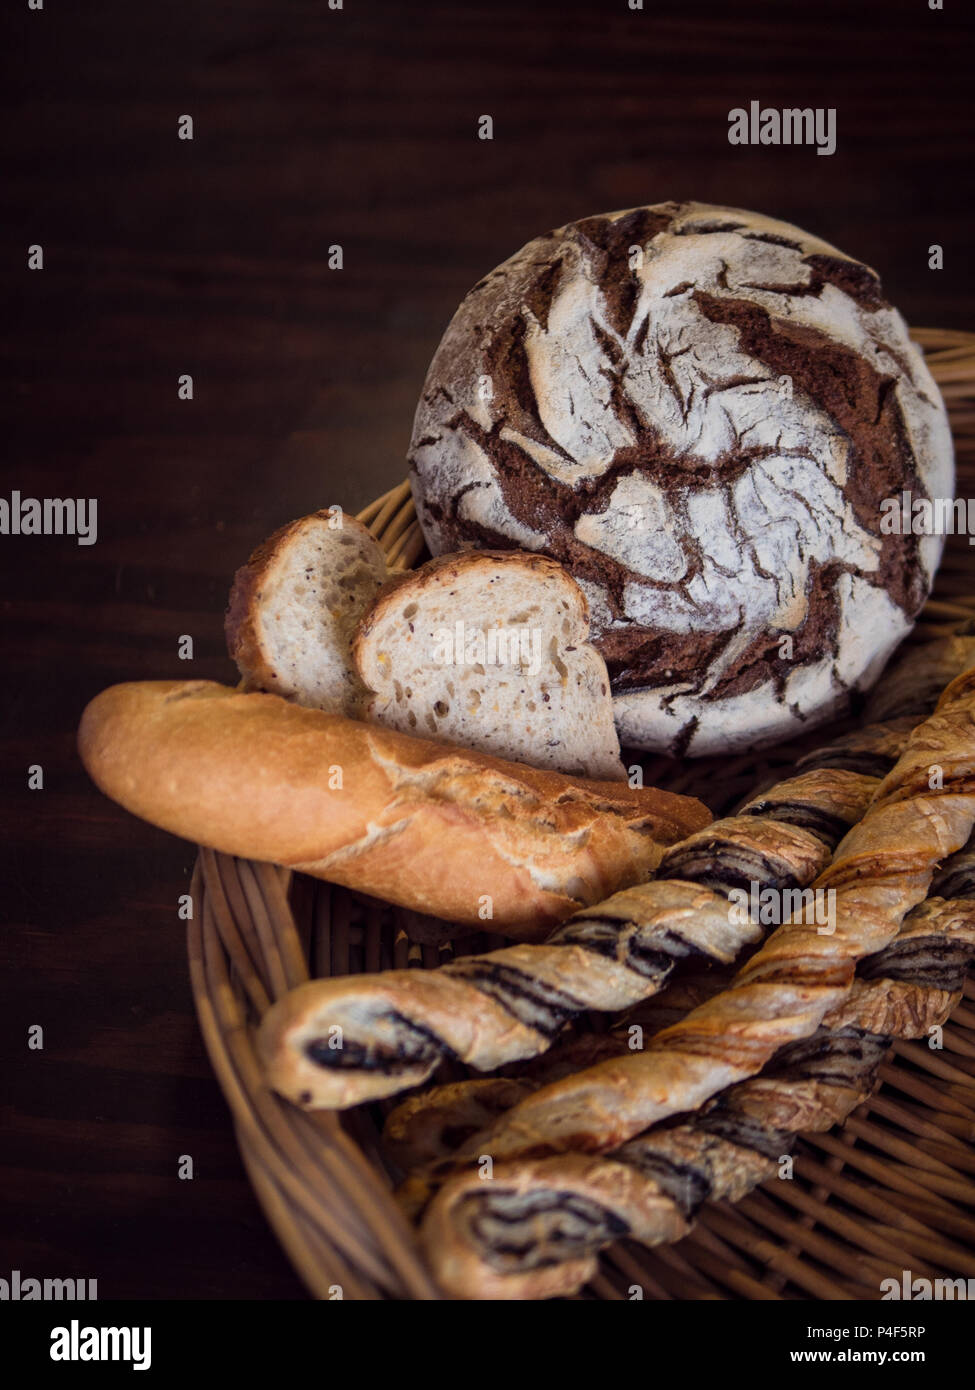 Vue de dessus d'une variété de pains dans un panier en osier Banque D'Images